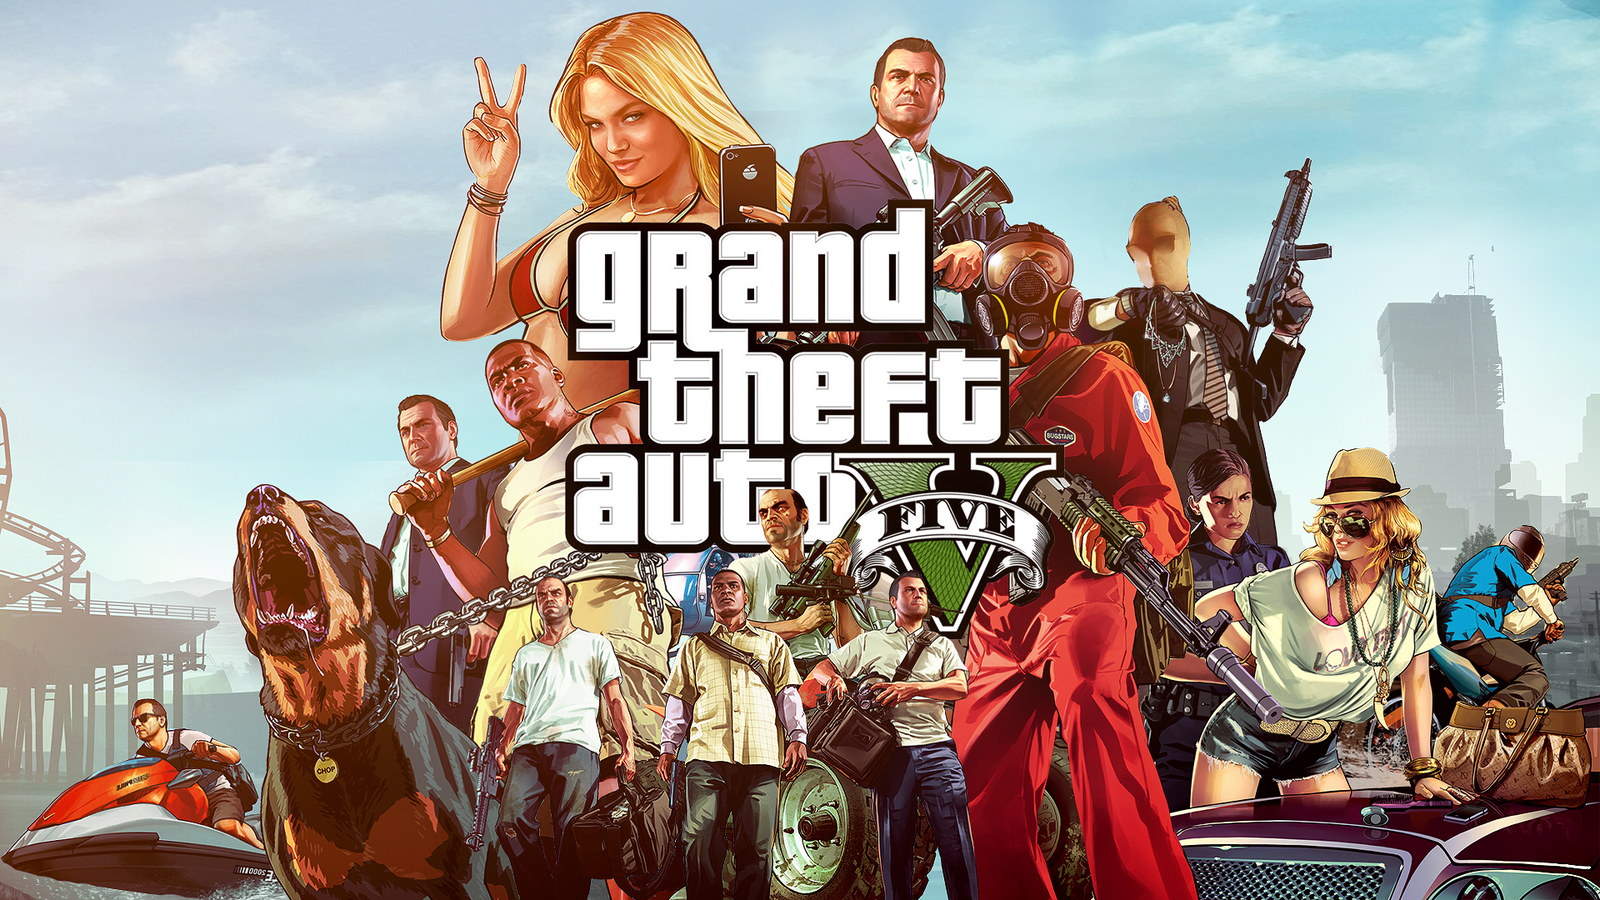 DESBLOQUEO A MI PERSONAJE en GTA 5! Grand Theft Auto V - GTA V